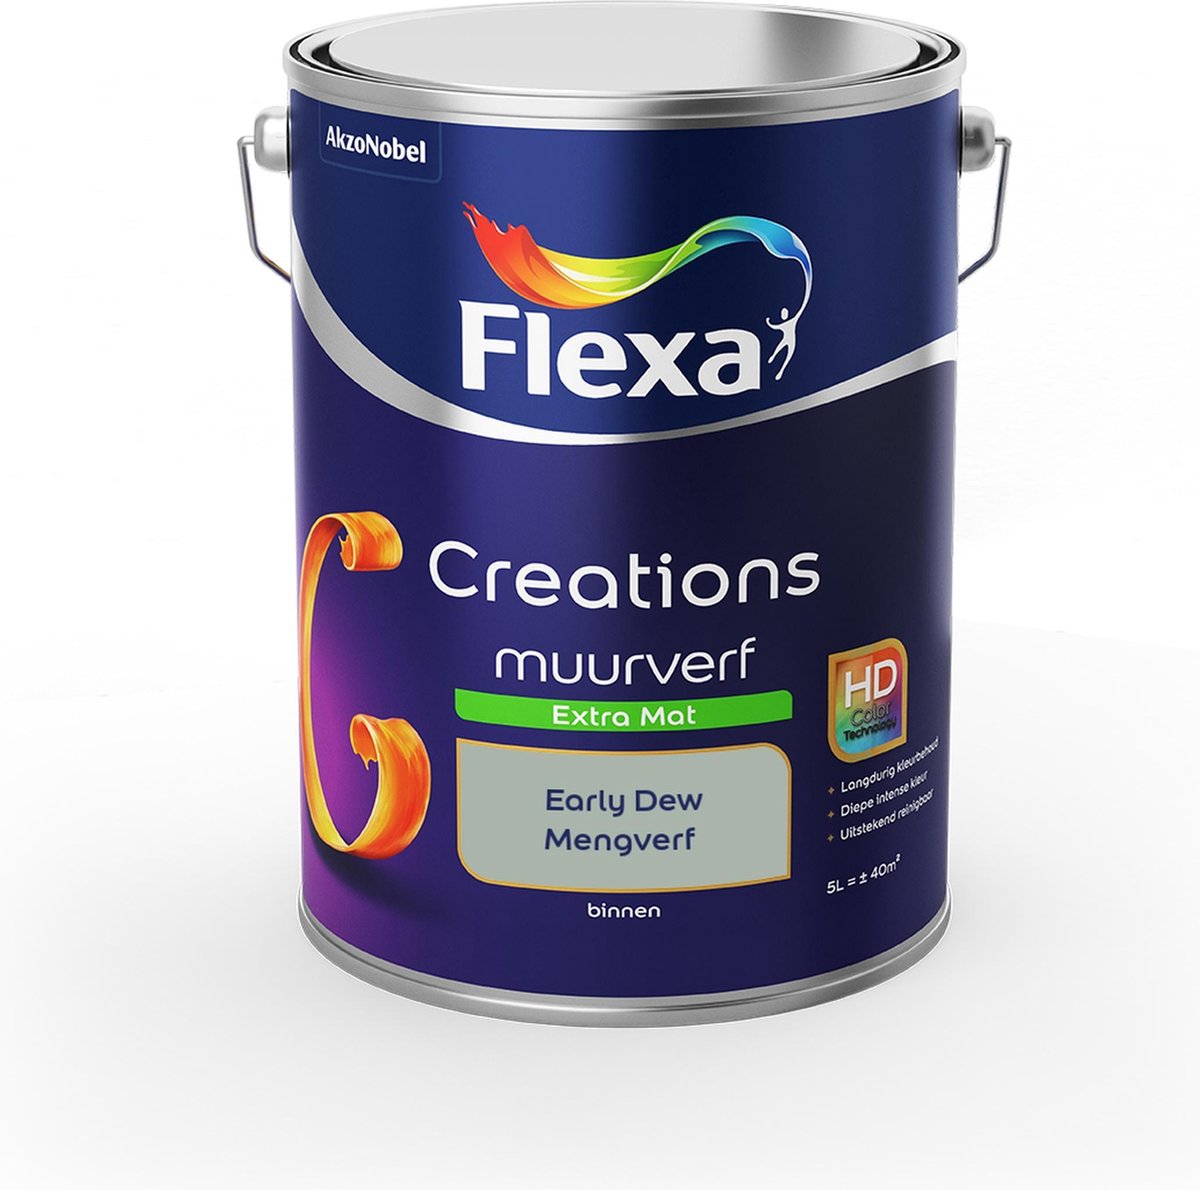 Flexa Creations Muurverf Extra Mat - Early Dew - Mengkleuren Collectie - 5 Liter